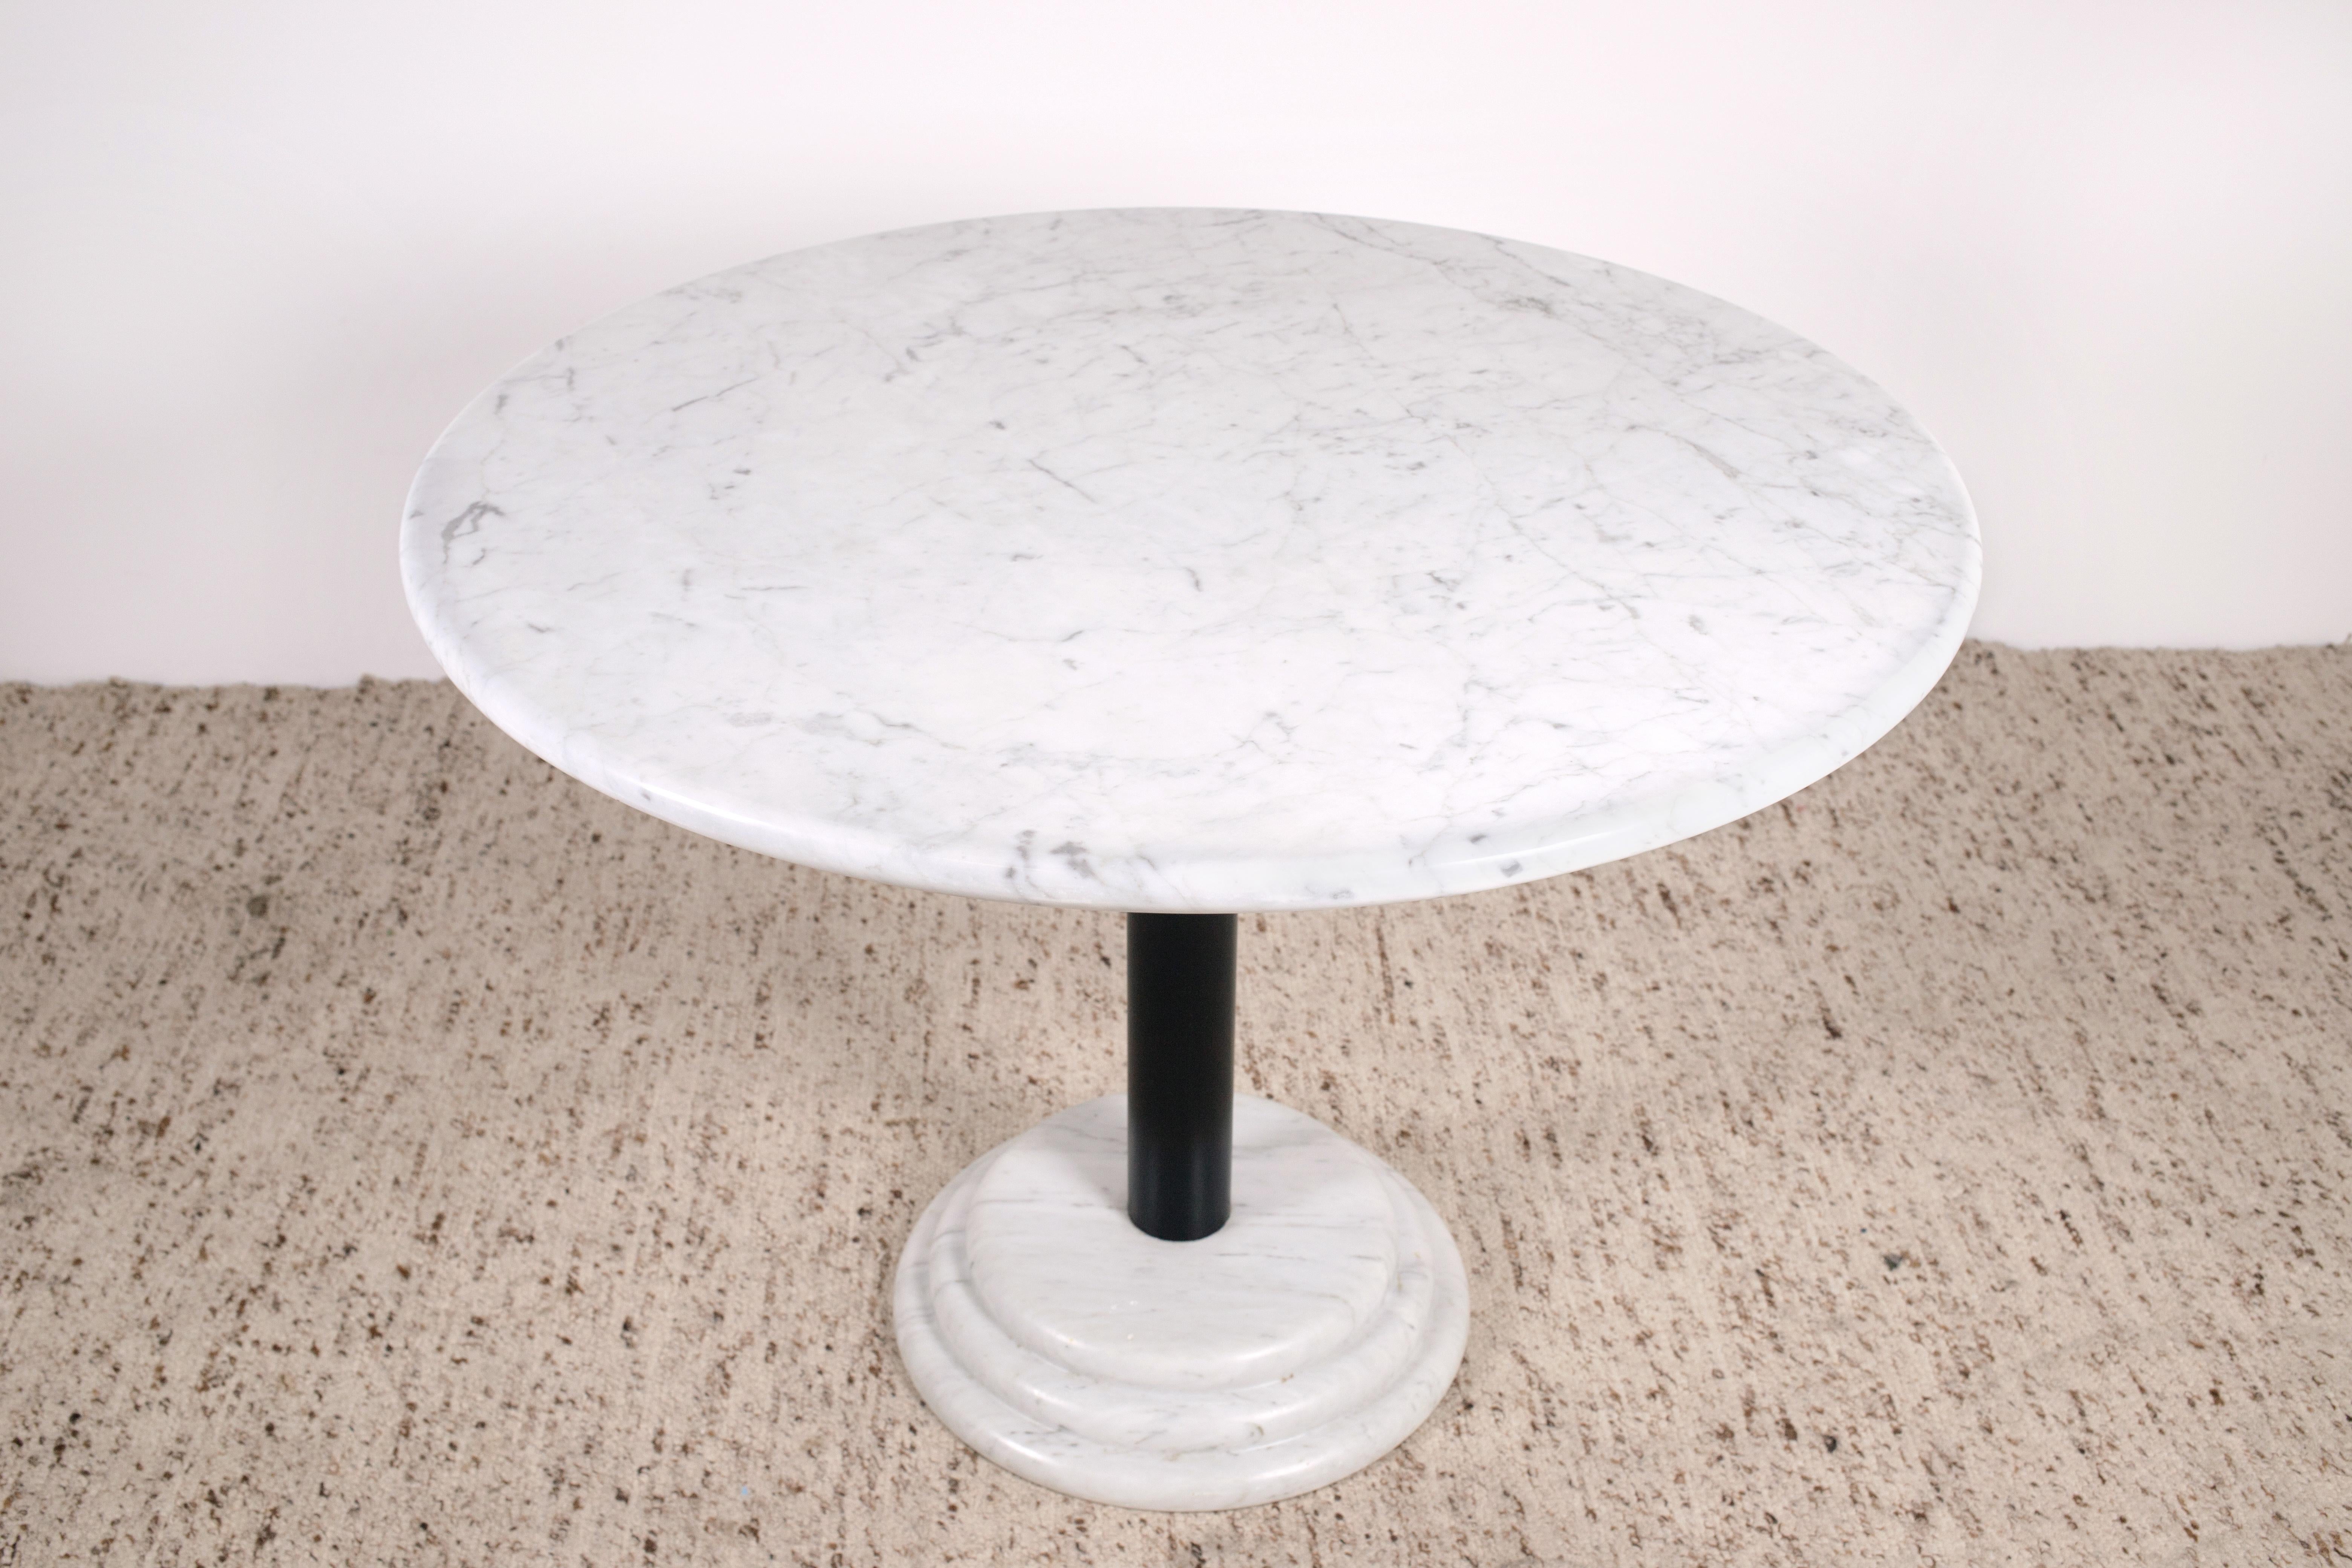 Tischplatte und Sockel aus weißem Carrara-Marmor, Ettore Sottsass zugeschriebener Sockeltisch. Dieses schöne und skurrile Stück ist ein Beispiel für die Memphis Milano-Ästhetik von Ettore Sottsass. Was später zu einer der wichtigsten